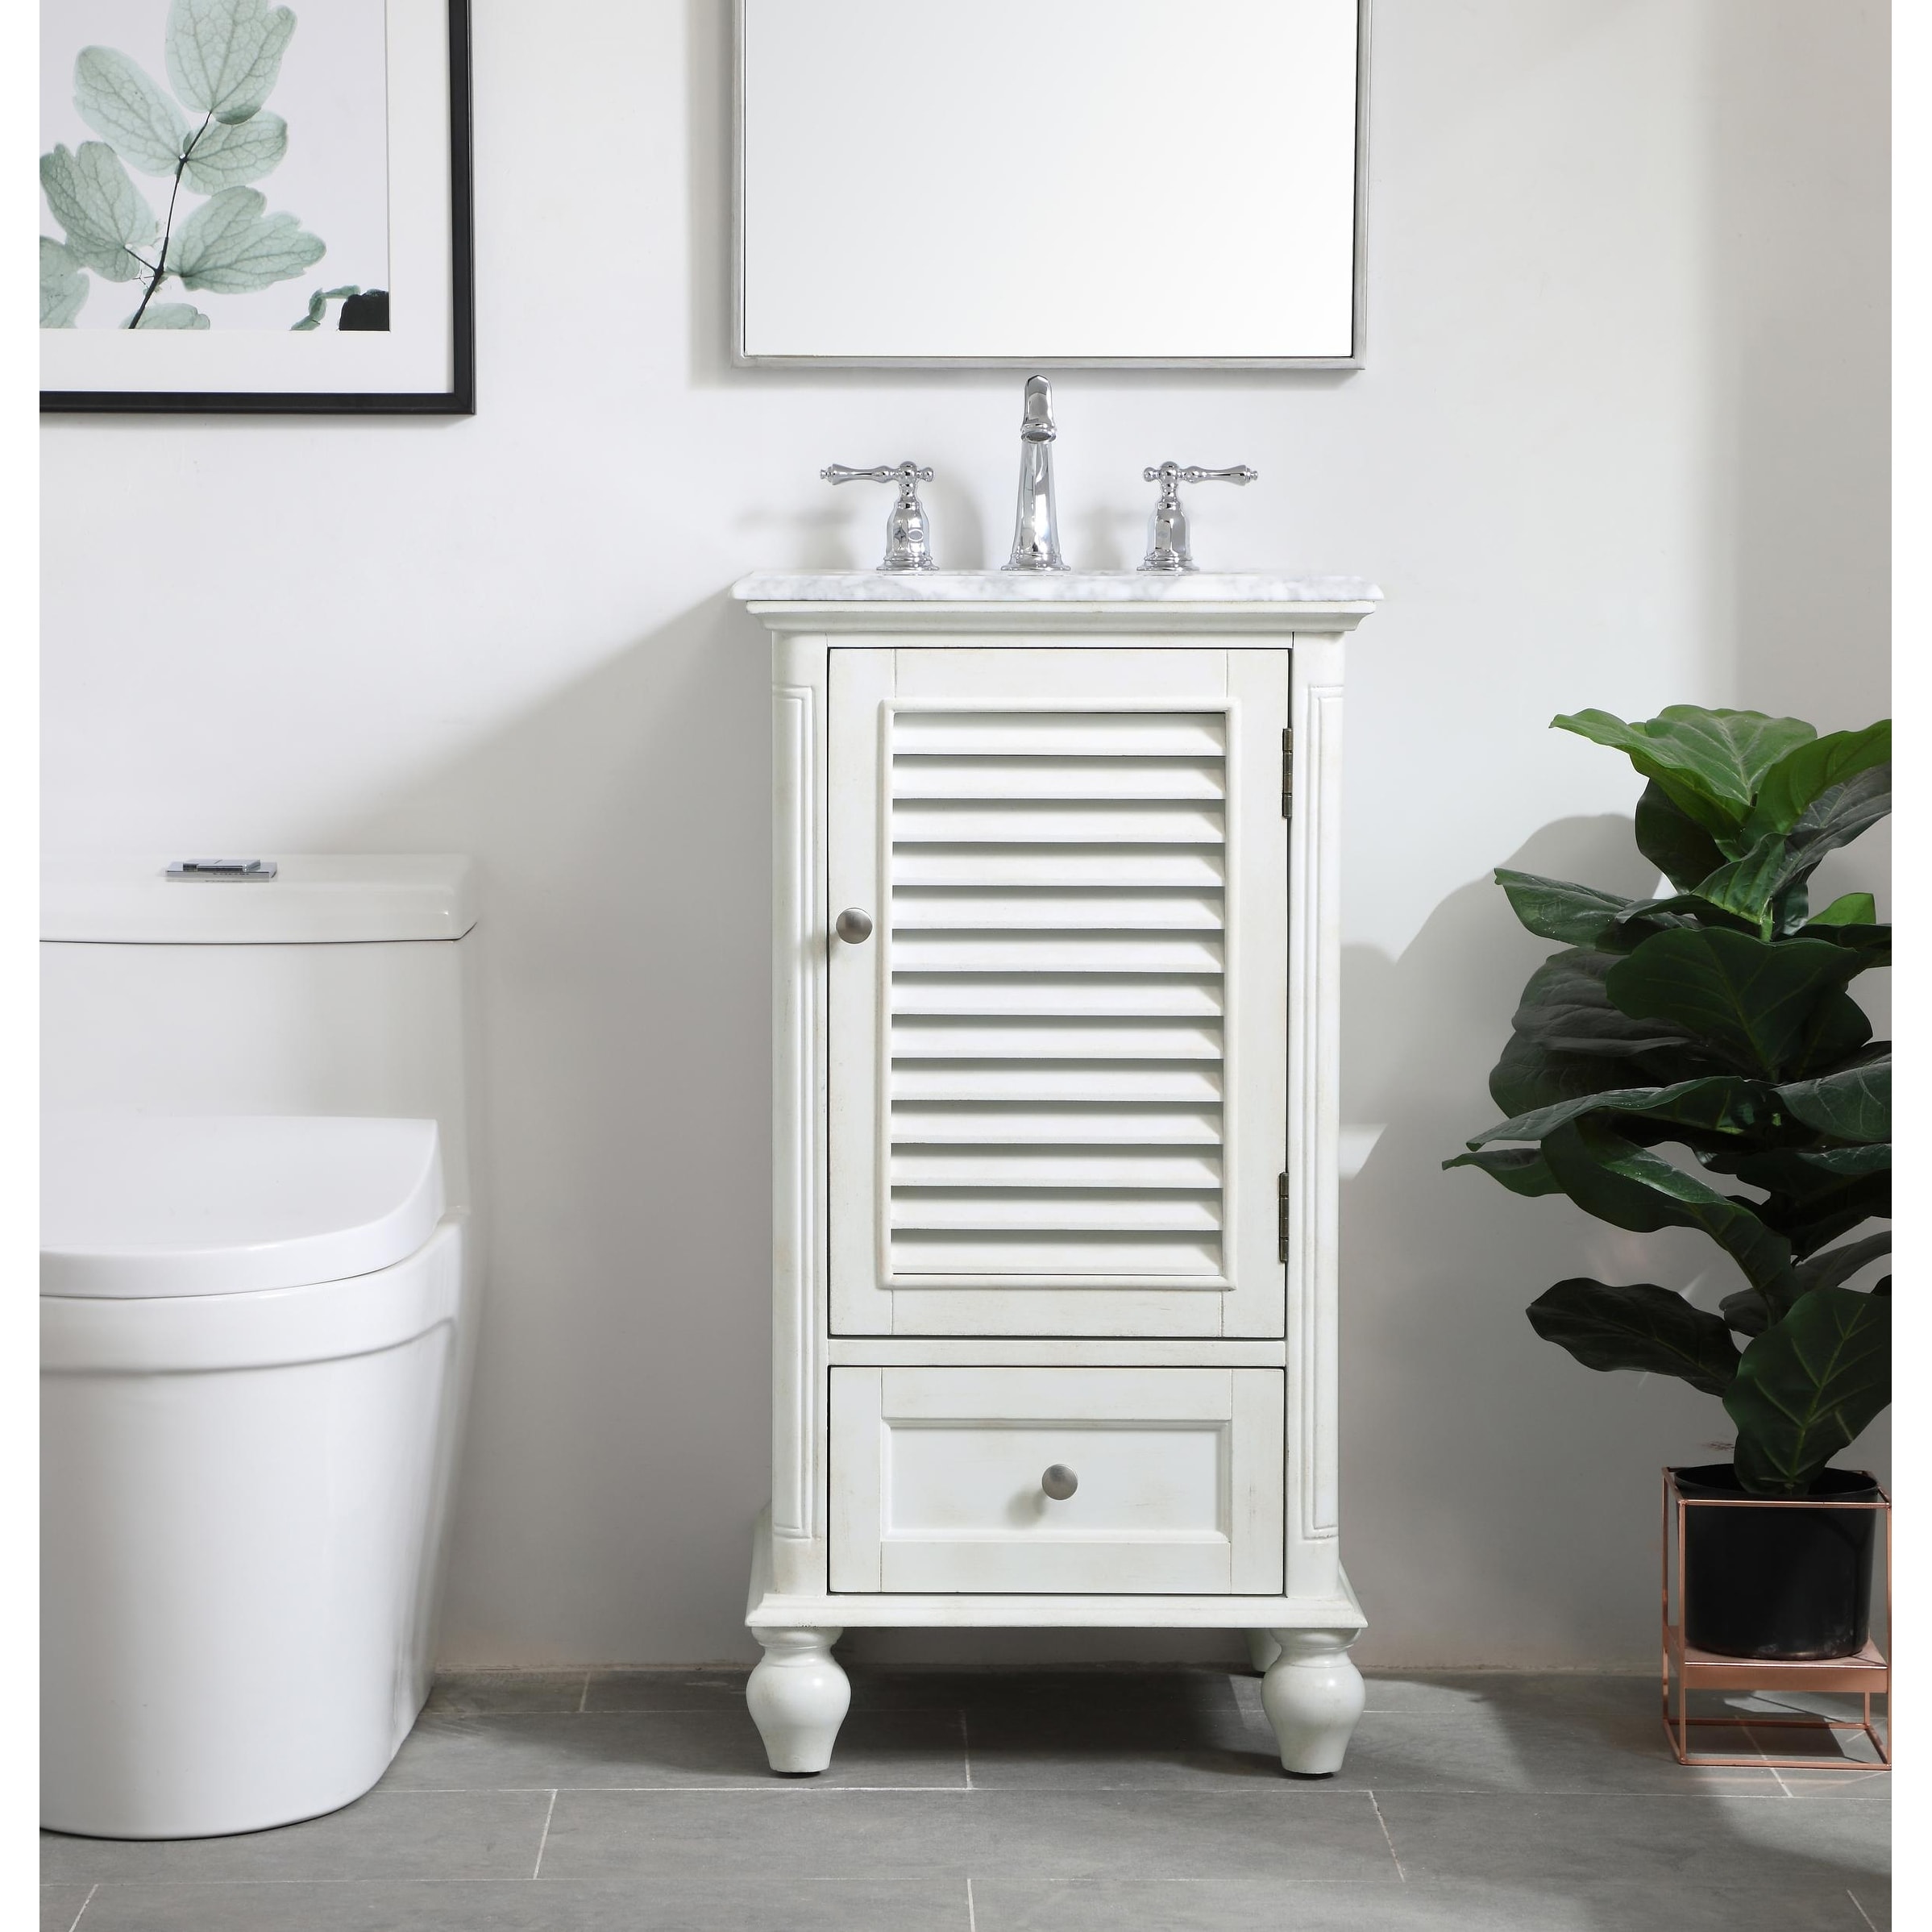 Rockland Coastal Bathroom Vanity Cabinet Set with Marble Top